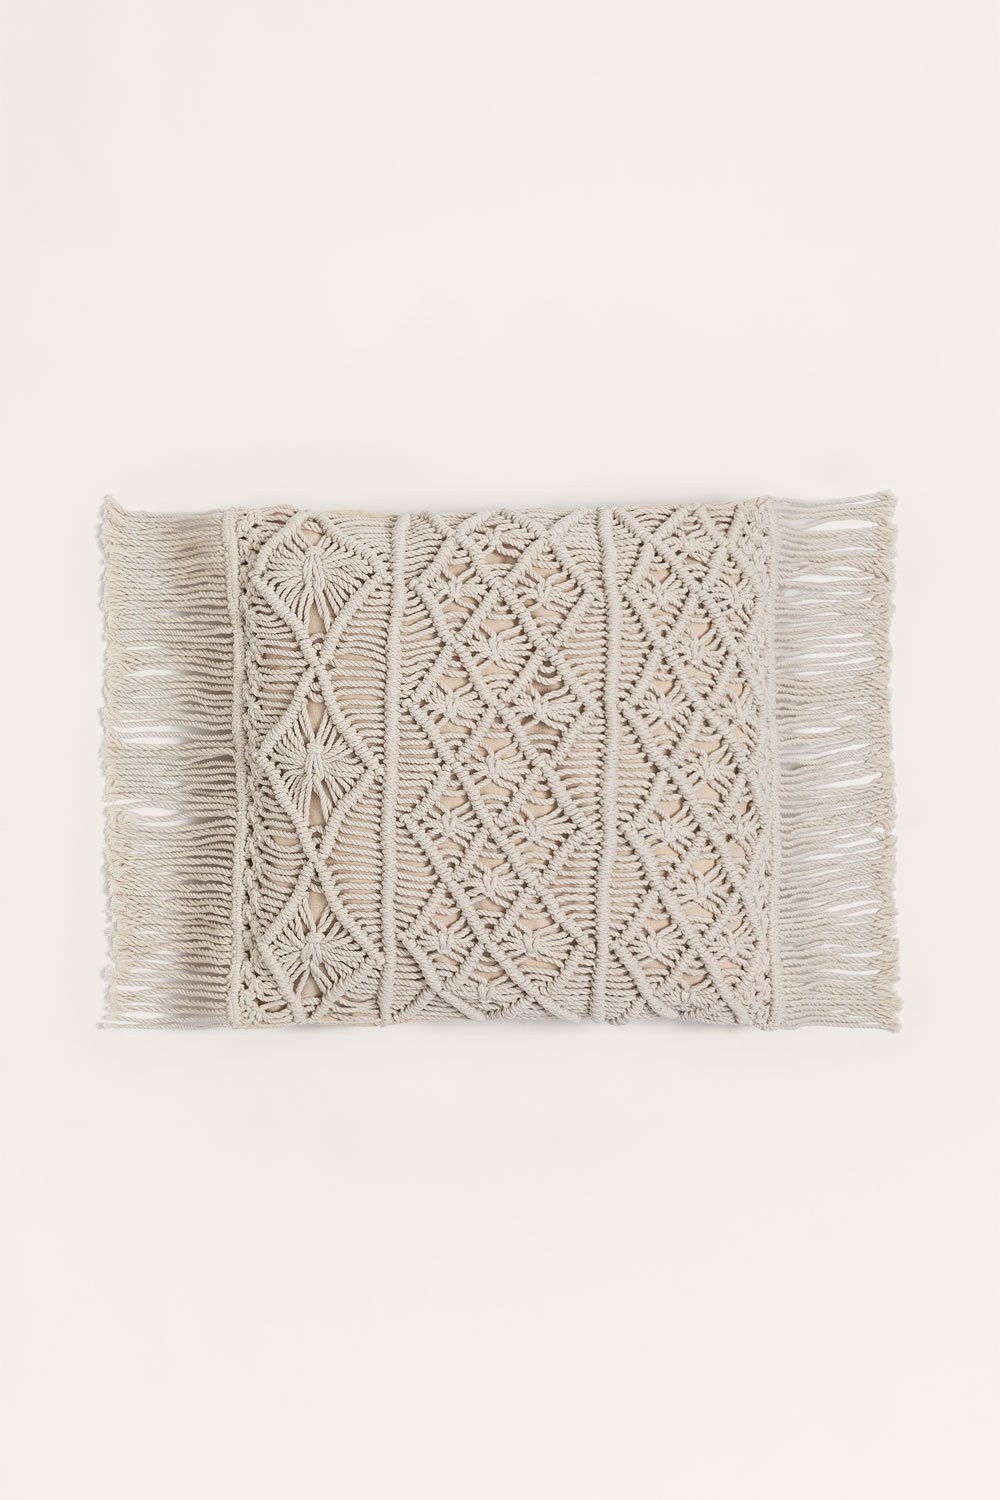 Cuscino quadrato in macramè (45x45 cm) Narses, immagine della galleria 1